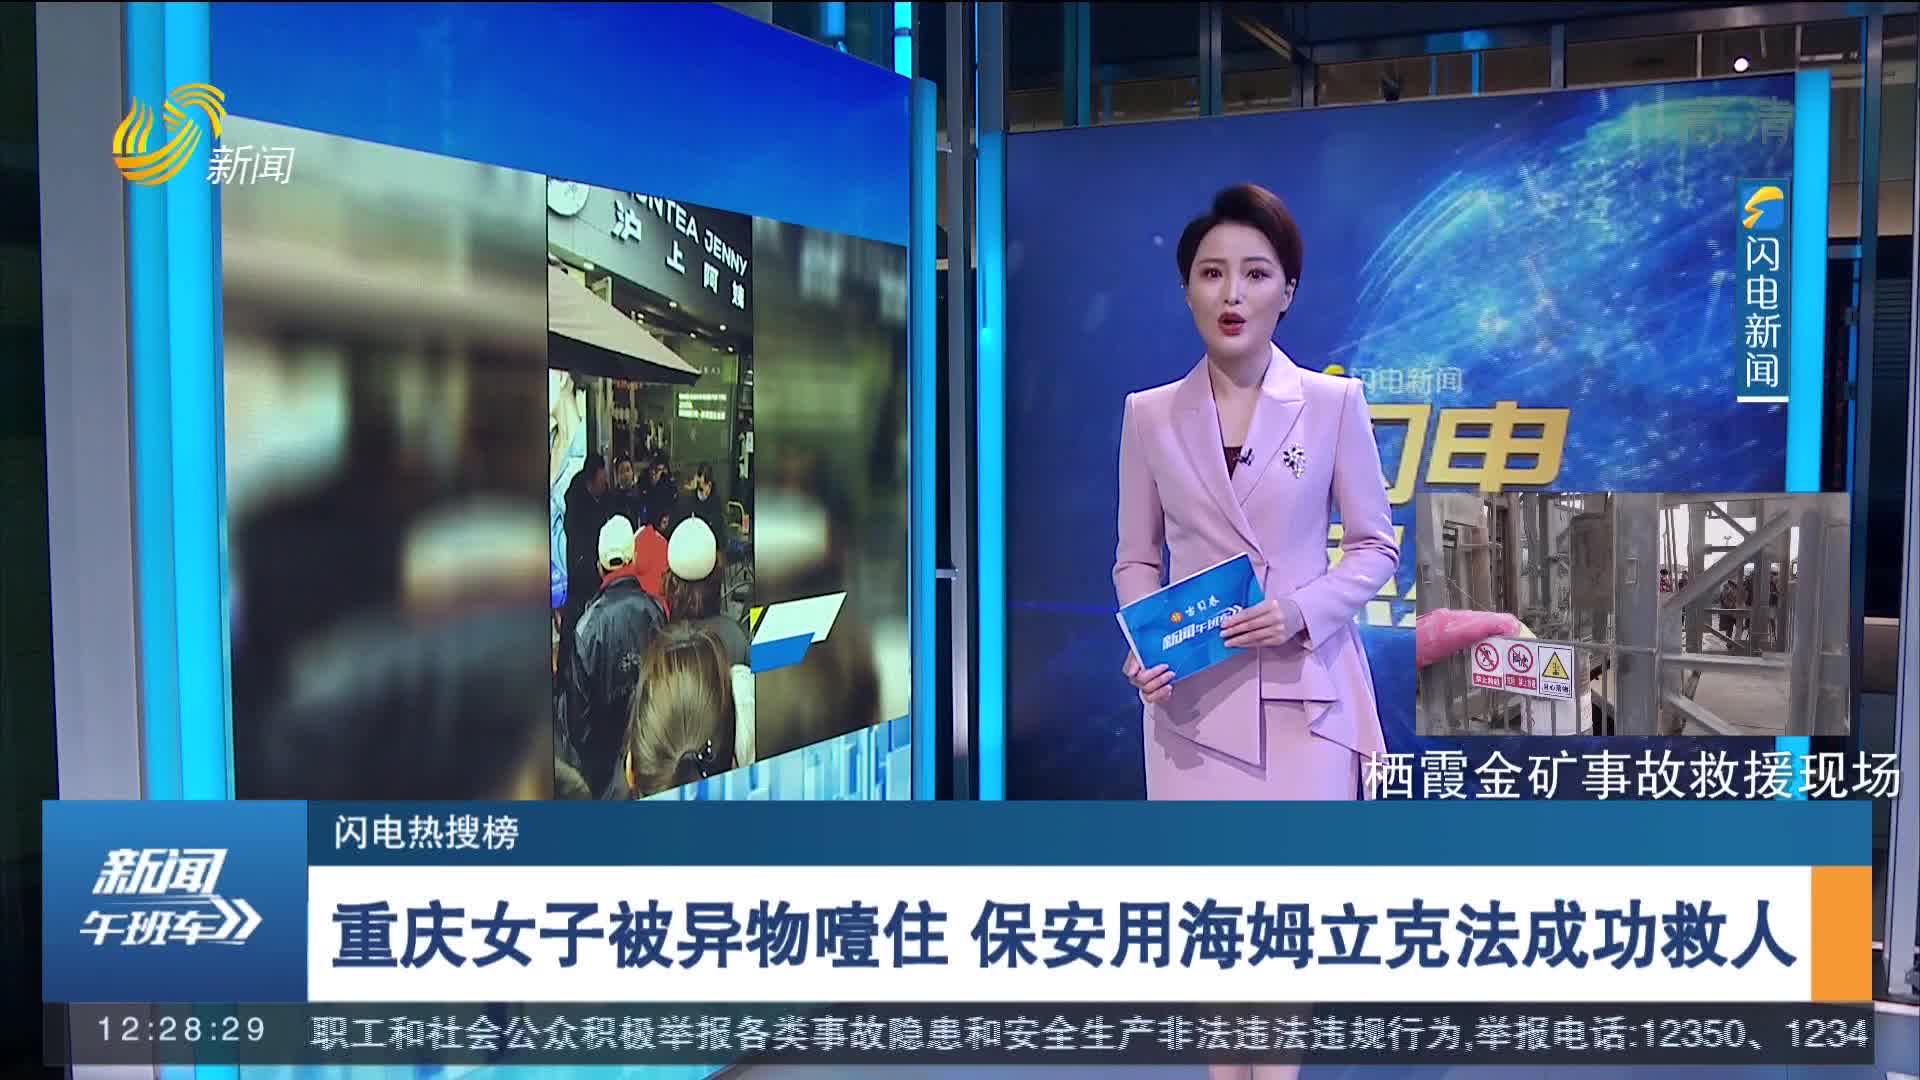 【闪电热搜榜】重庆女子被异物噎住 保安用海姆立克法成功救人